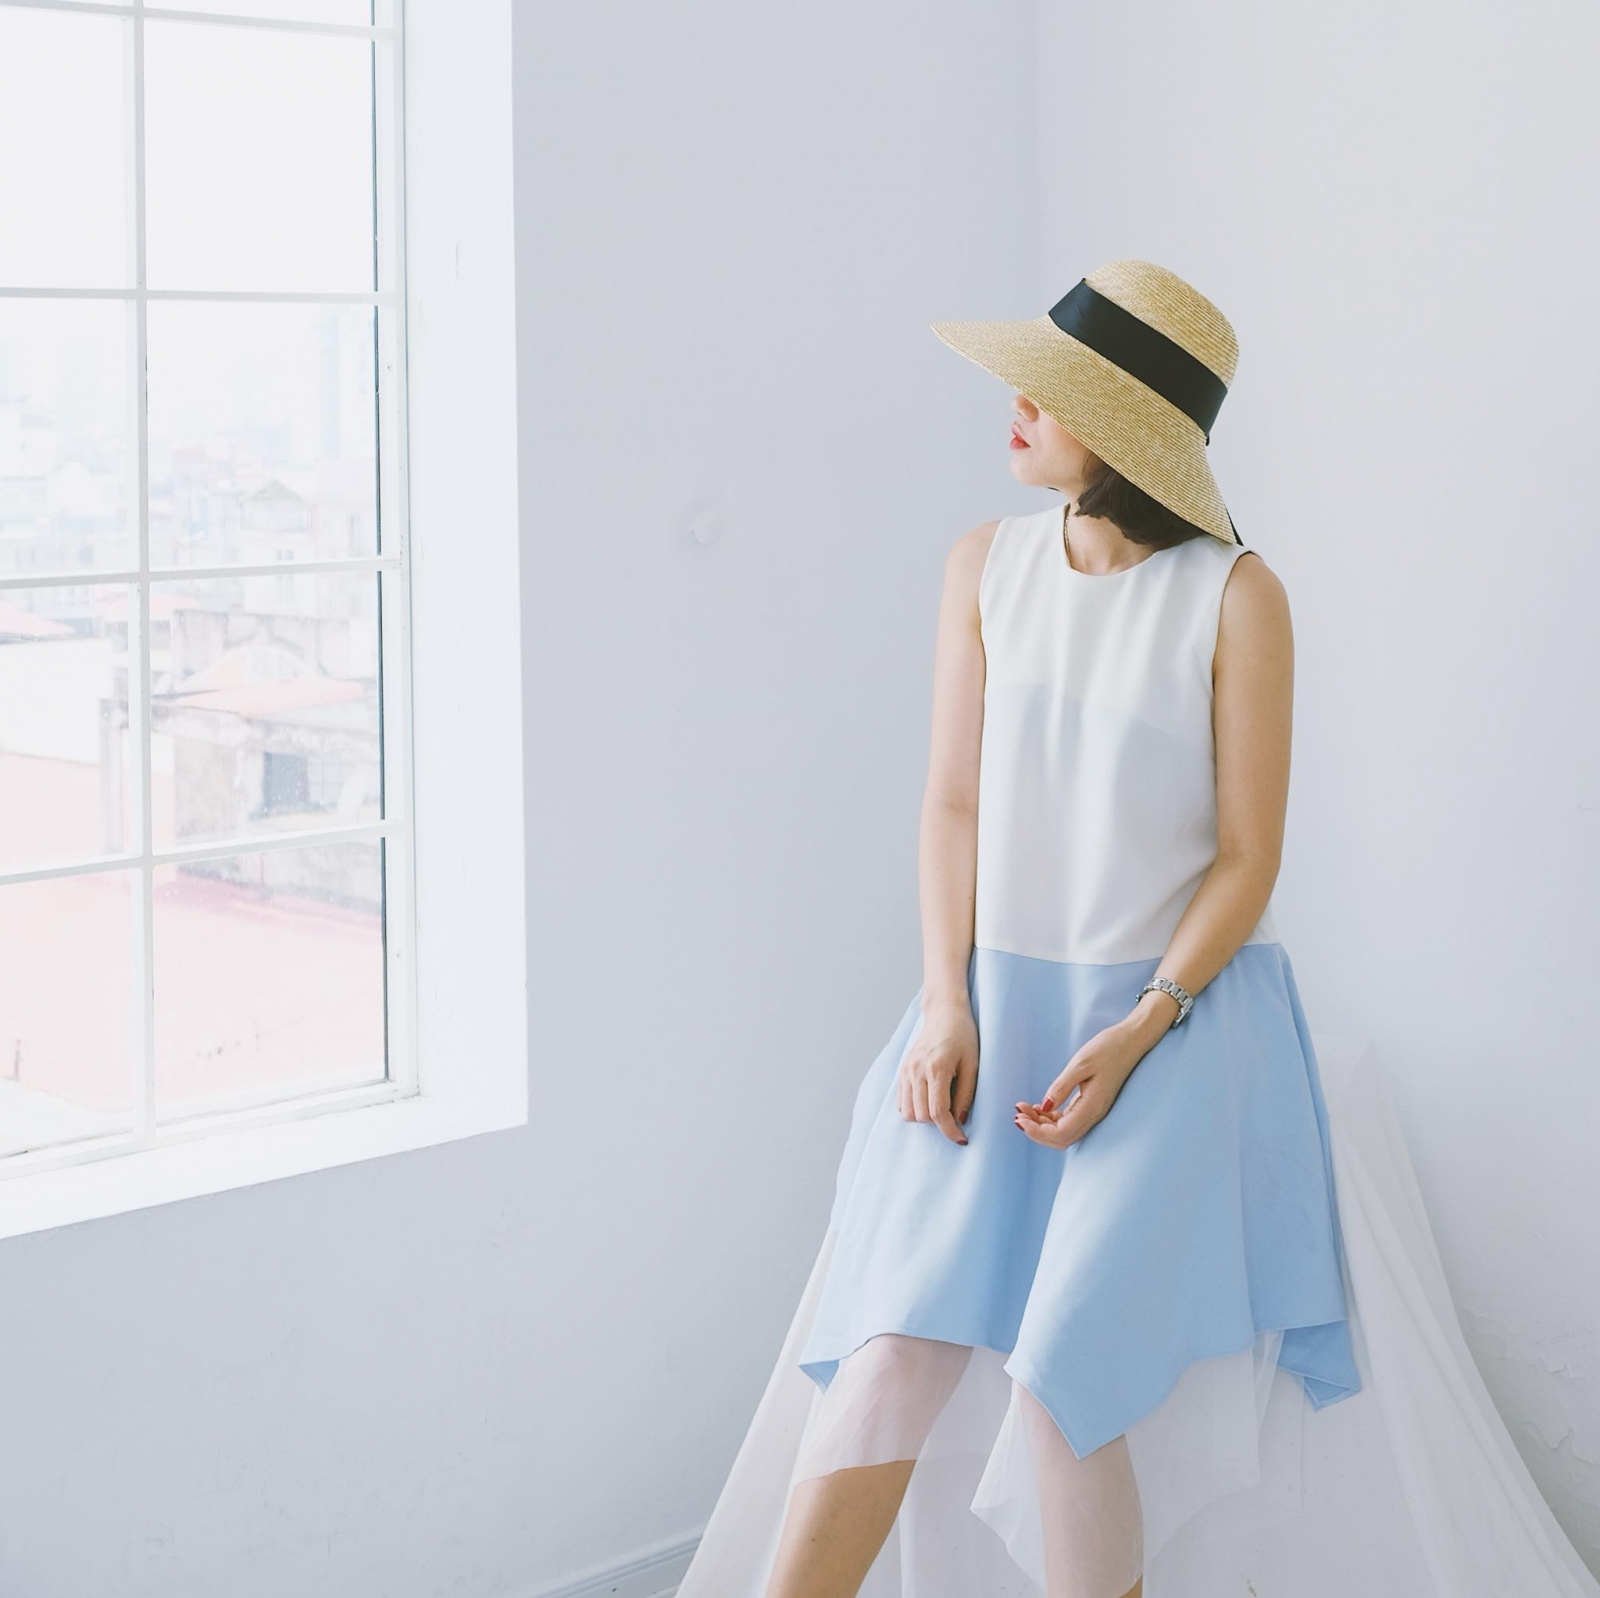 Top n shop bán váy đầm đẹp nhất ở Hà Nội